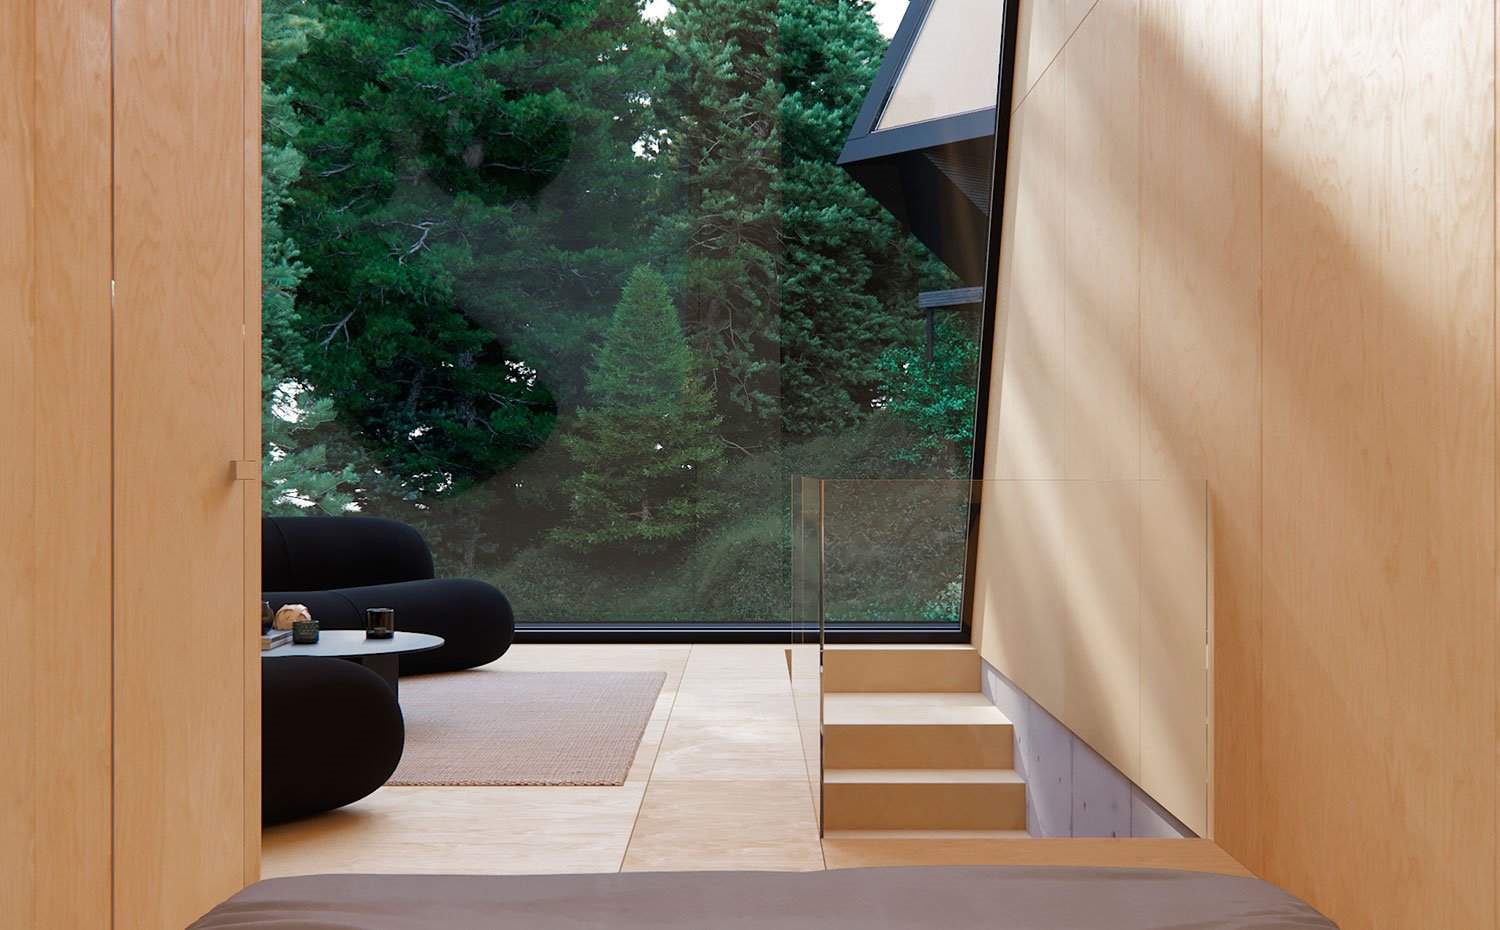 Gran cerramiento acristalada con paredes paneladas en madera, suelo de madera, sofás en negro y barandilla de escalera en cristal transparente